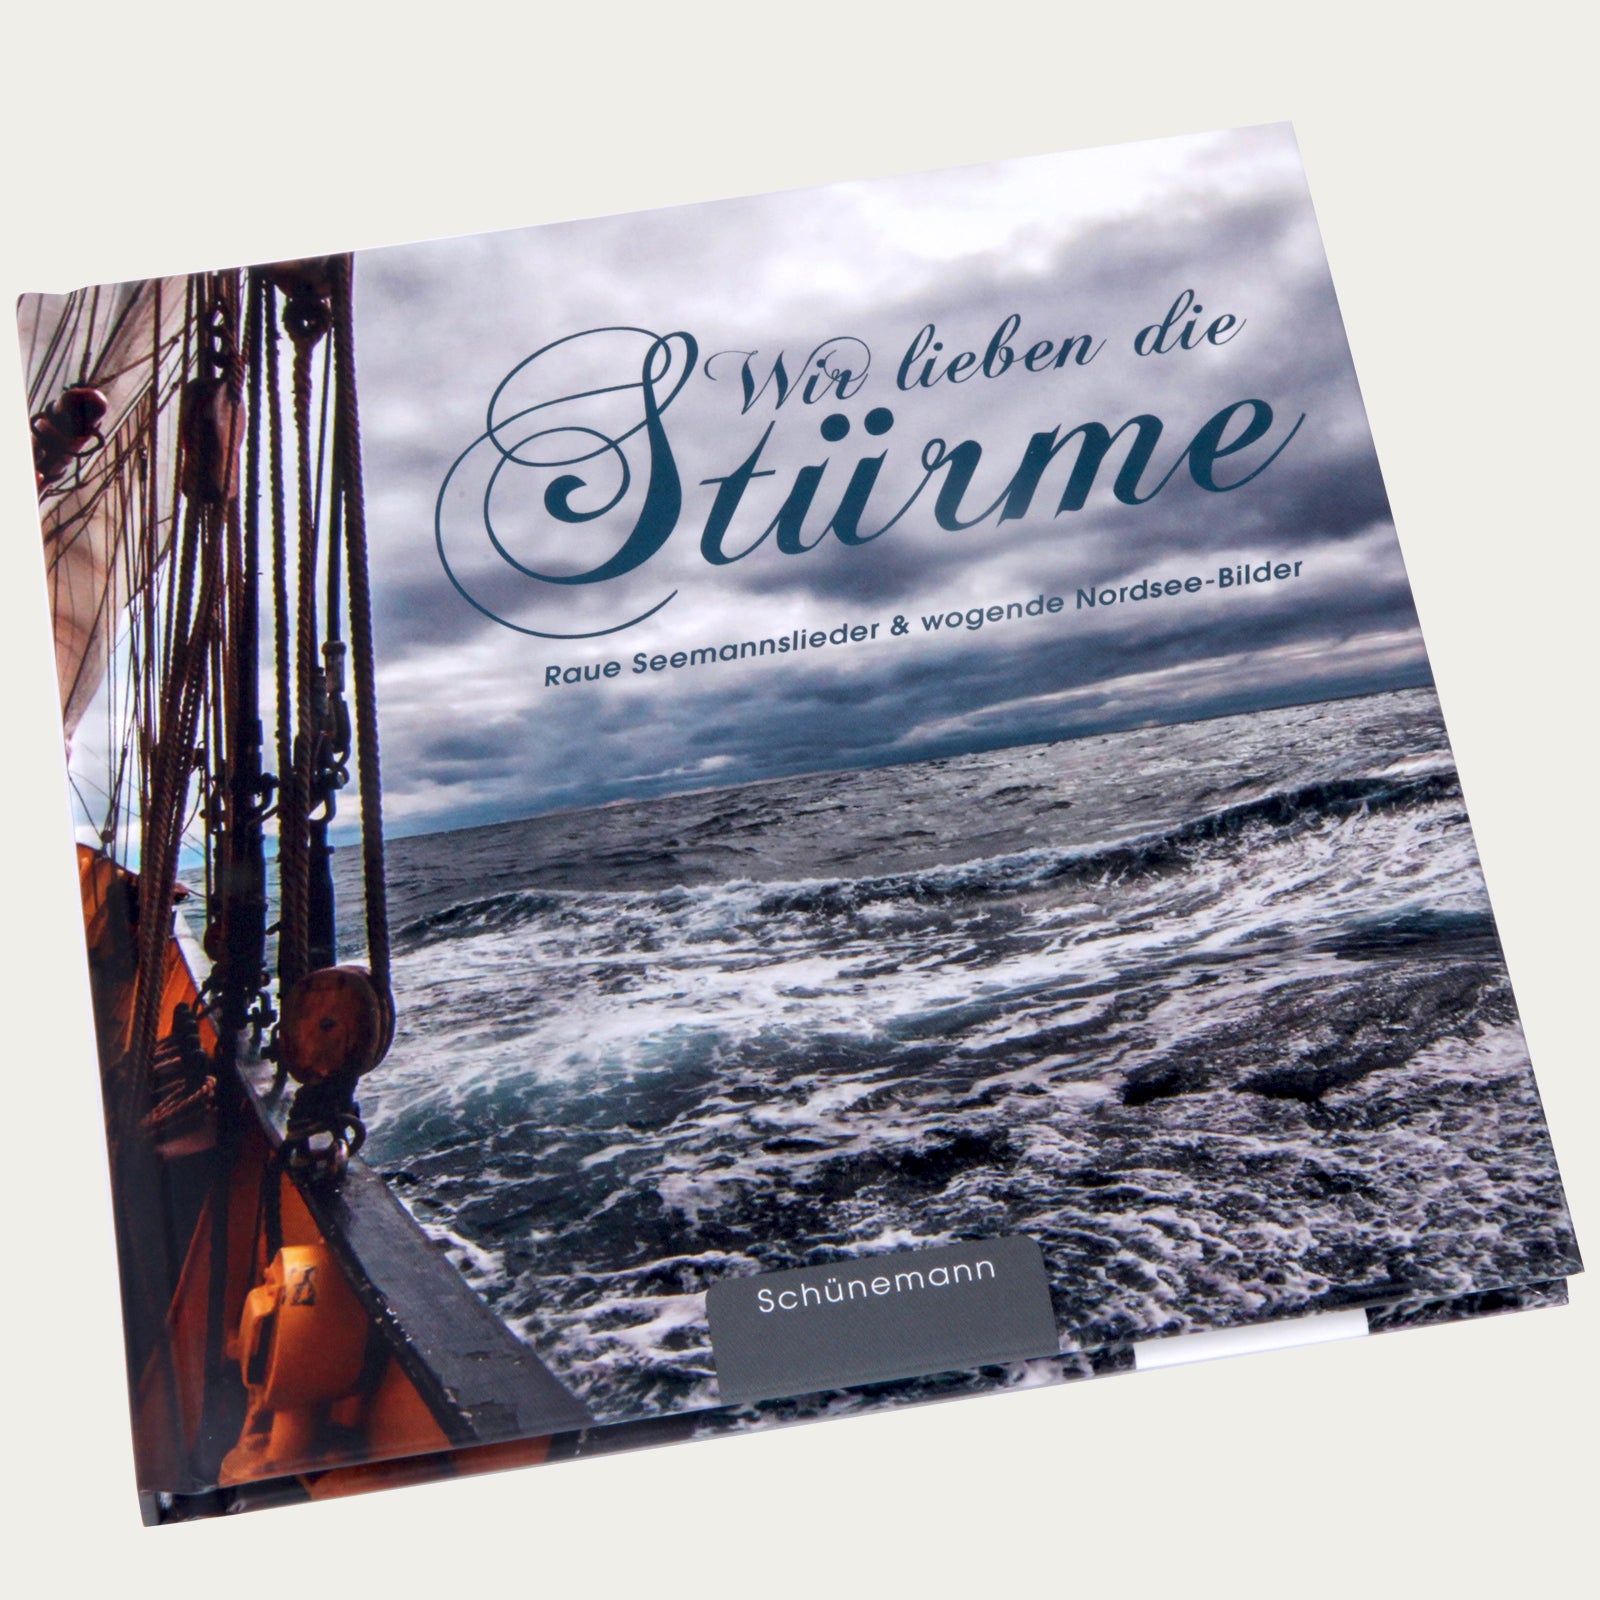 Wir lieben die Stürme - Raue Seemannslieder & wogende Nordsee-Bilder - Buch - Made in Bremen - Carl Ed. Schünemann -